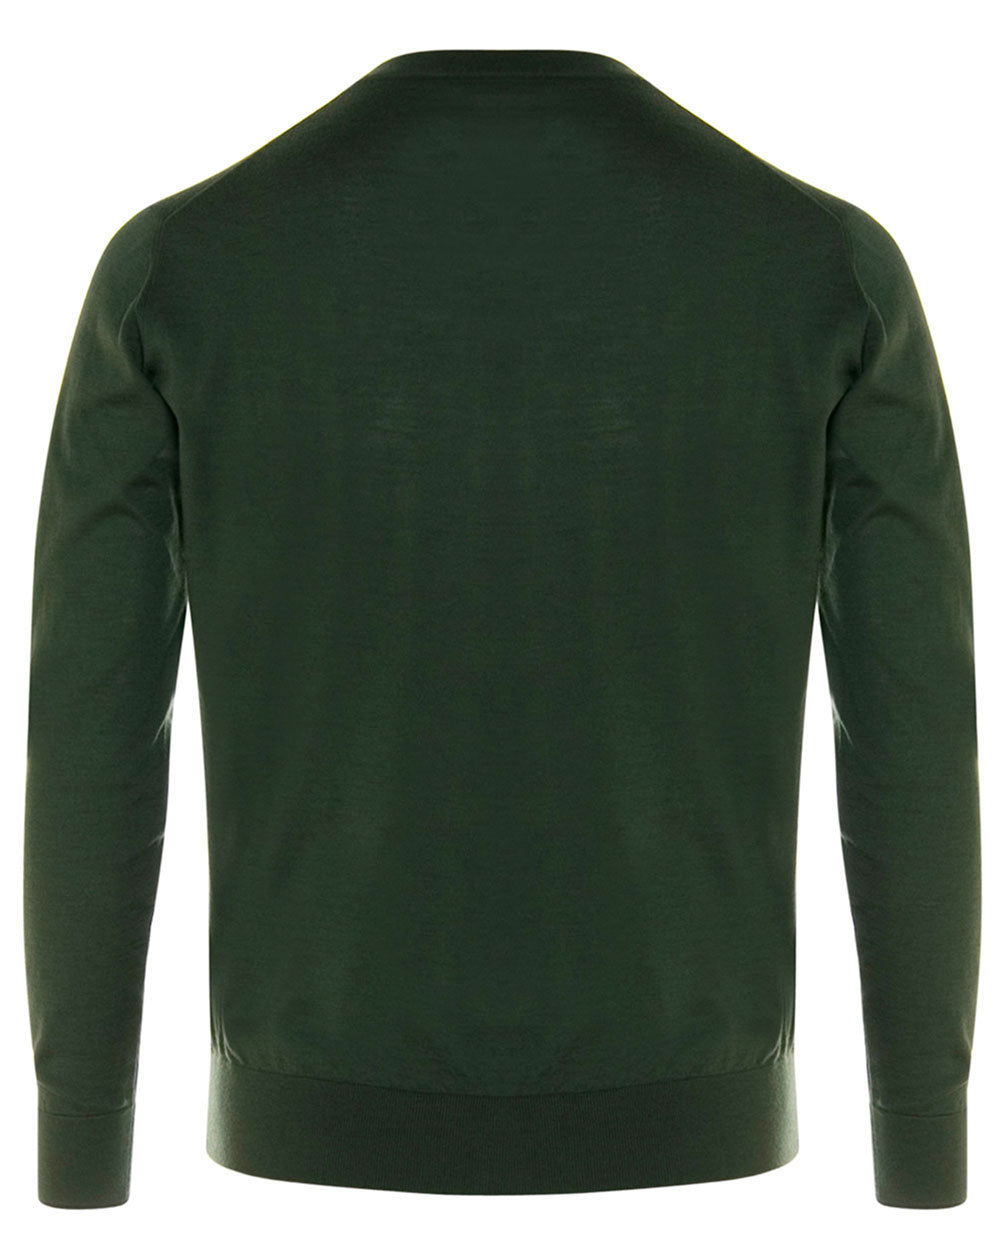 Olive Cashmere V-Neck Sweater